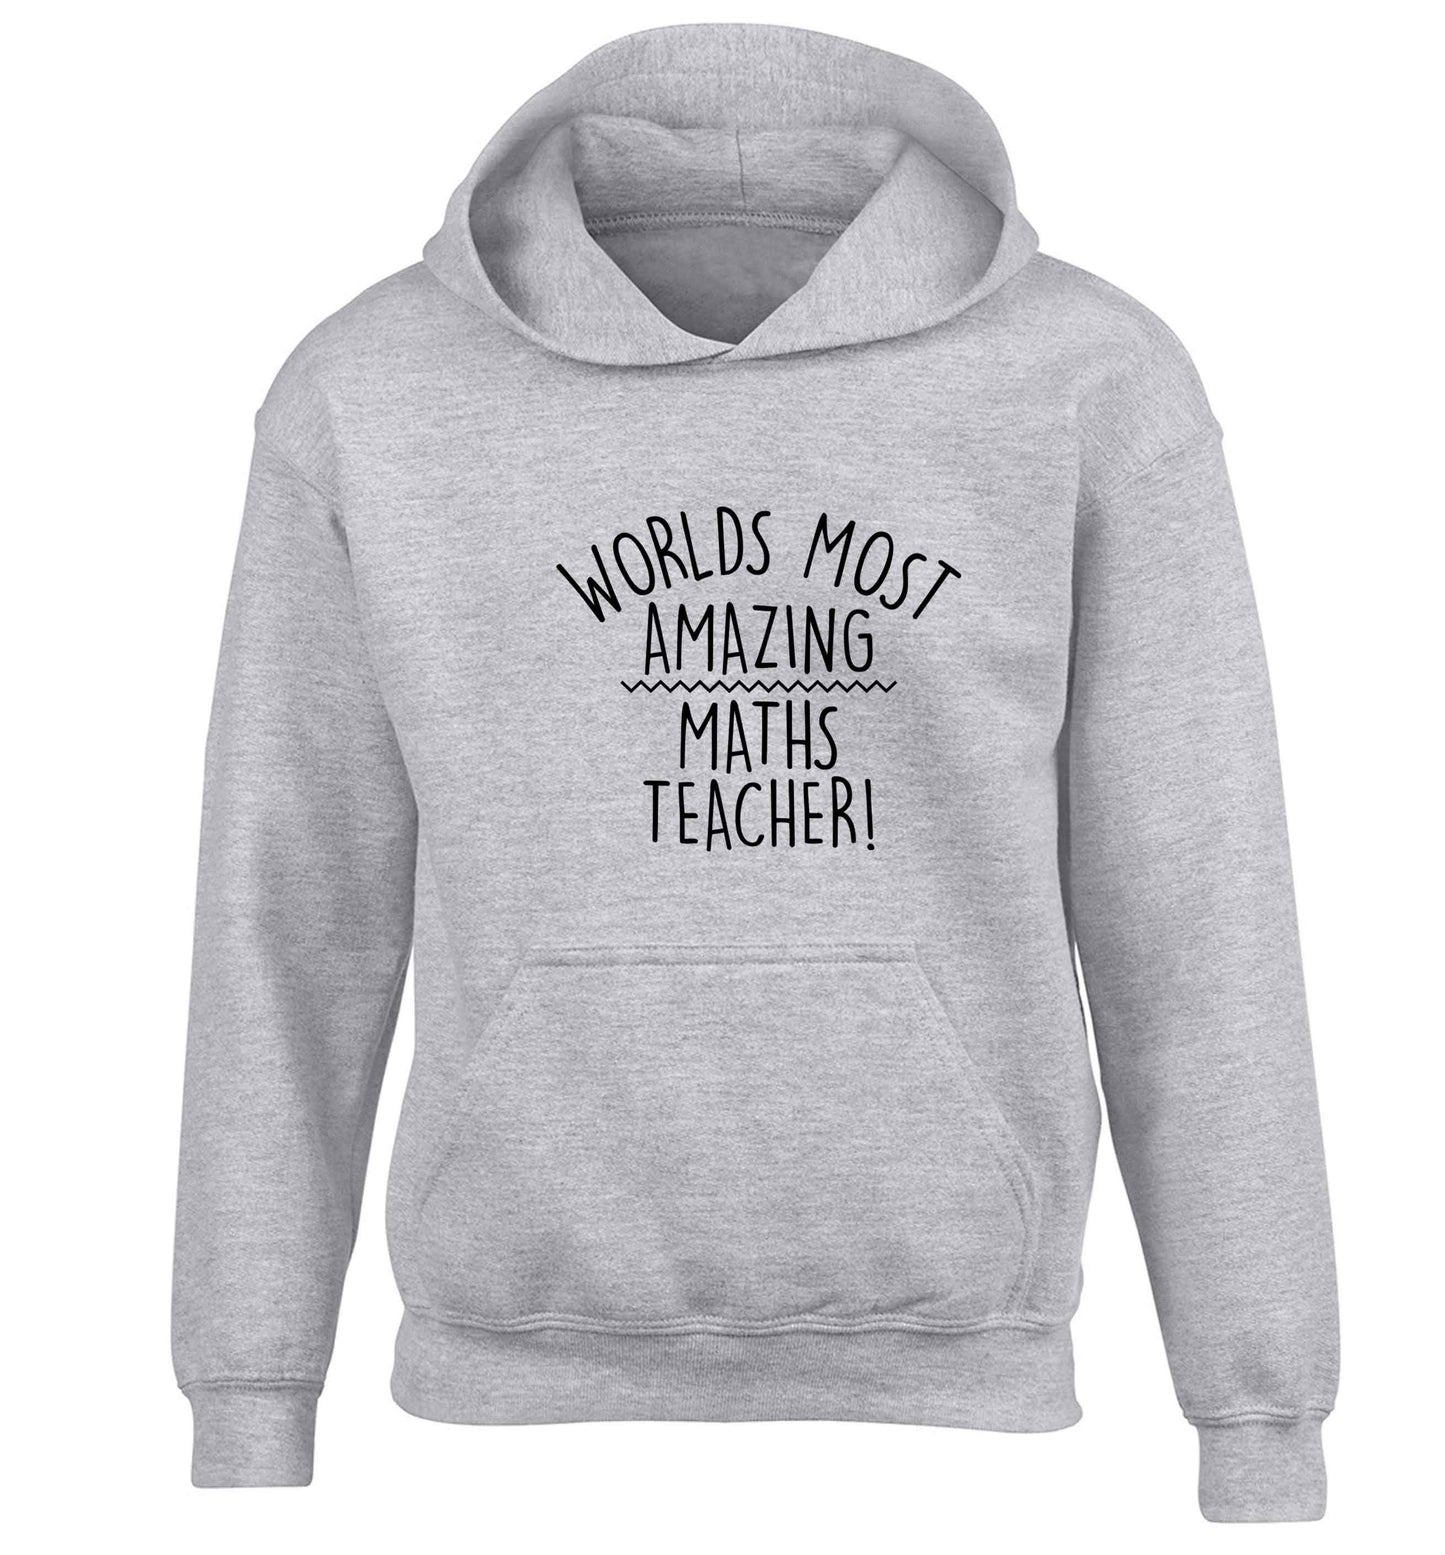 Worlds most amazing maths teacher children's grey hoodie 12-13 Years